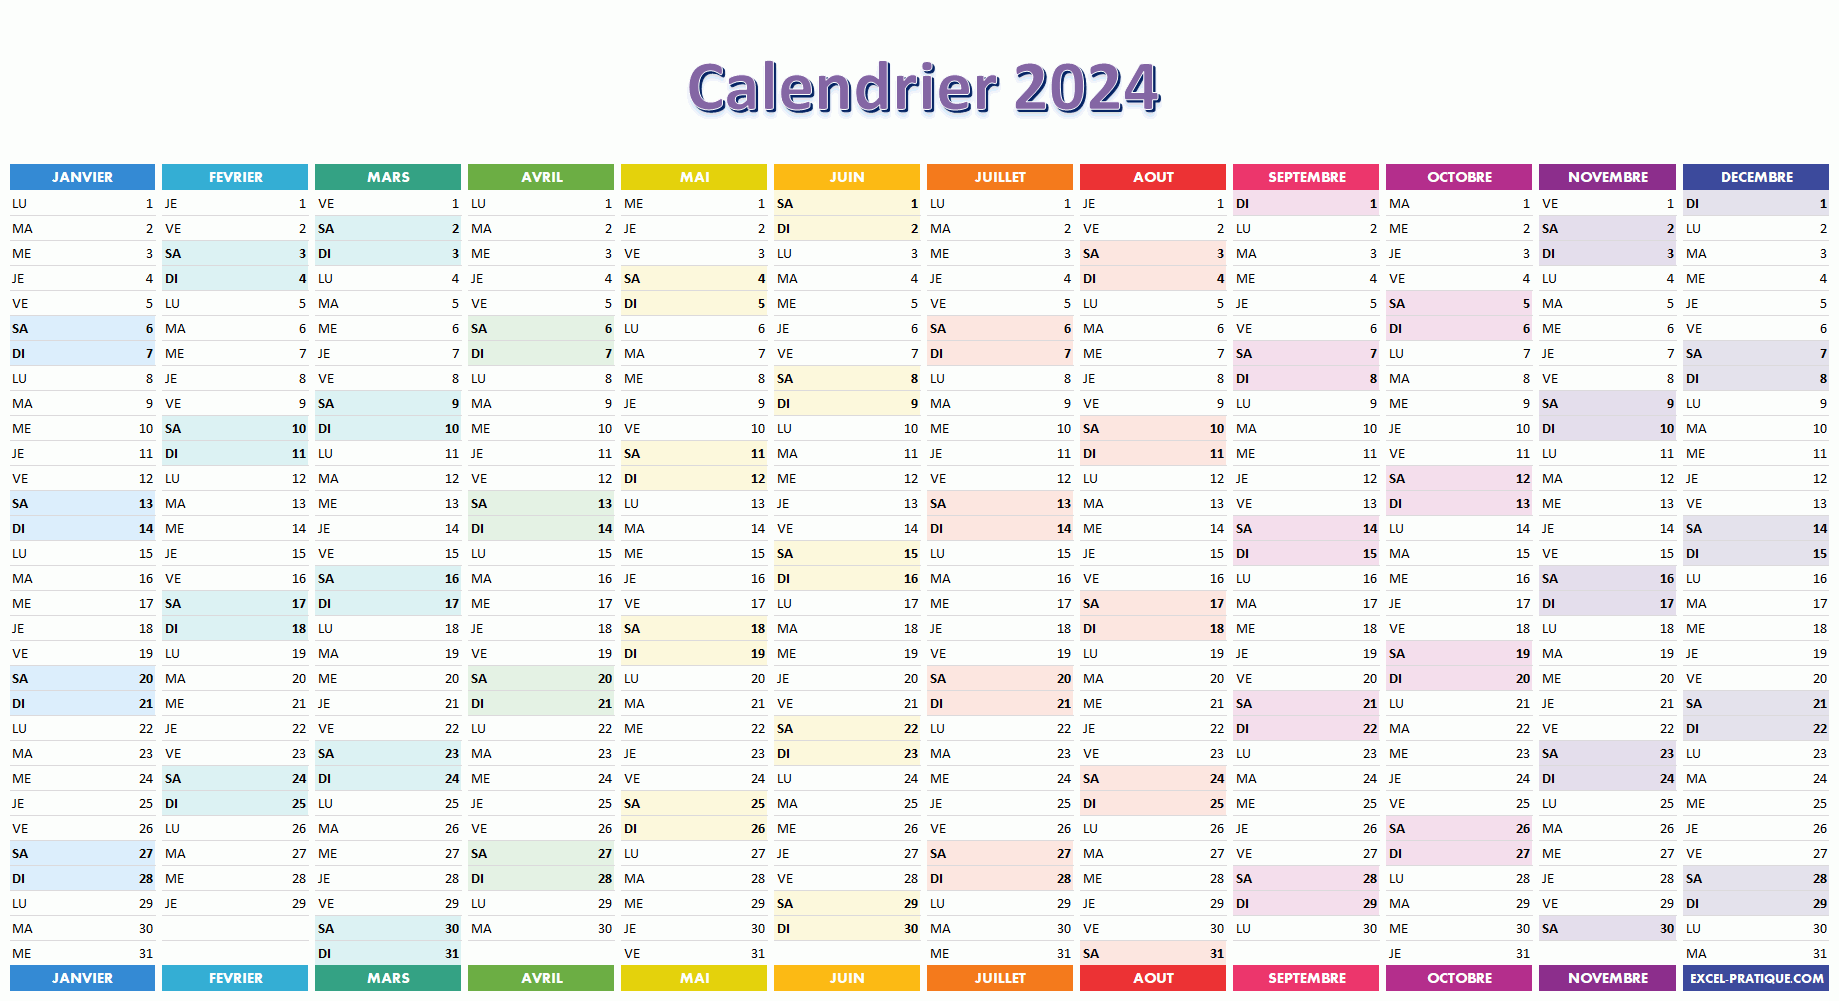 Calendrier Excel gratuit semaine pour l'année 2024 – Espritacademique